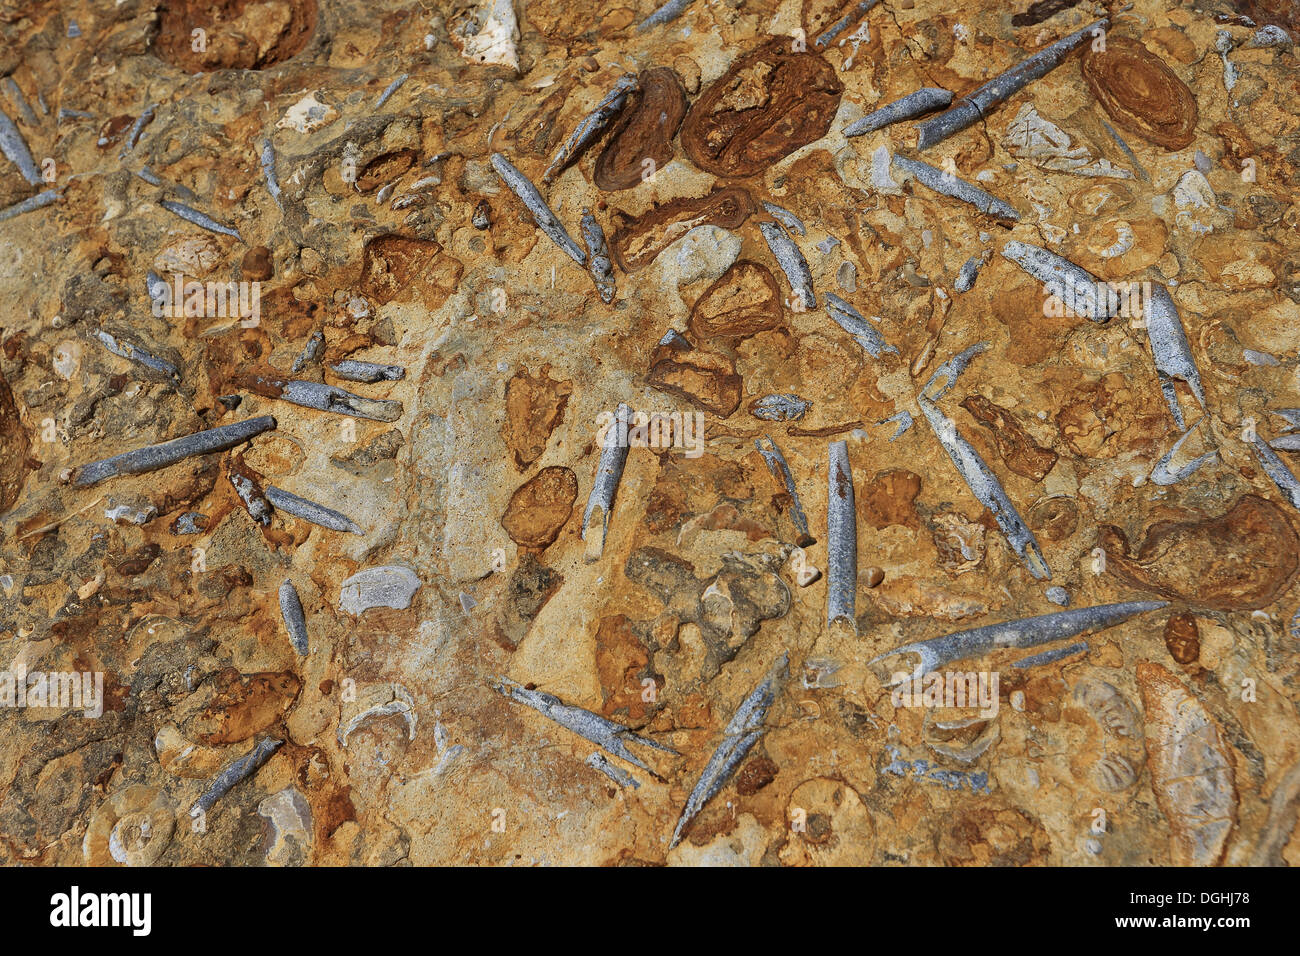 Belemnite rostro fossili nella roccia alla base della scogliera sulla spiaggia, Dorset, Inghilterra, può Foto Stock